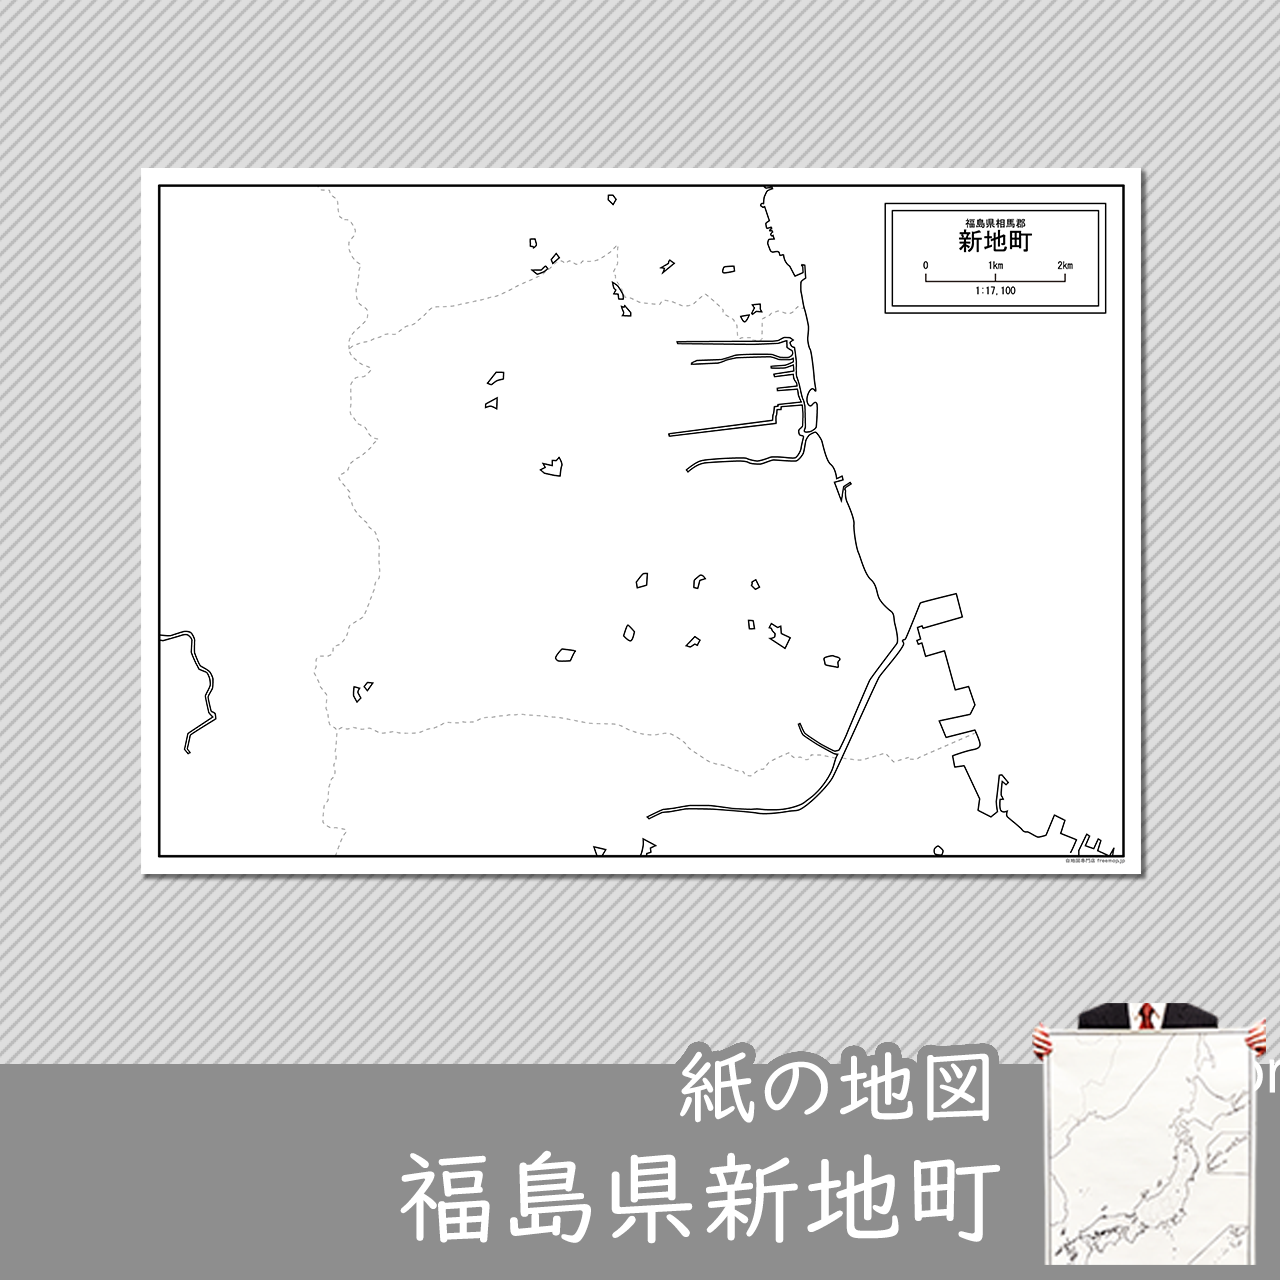 新地町の紙の白地図のサムネイル